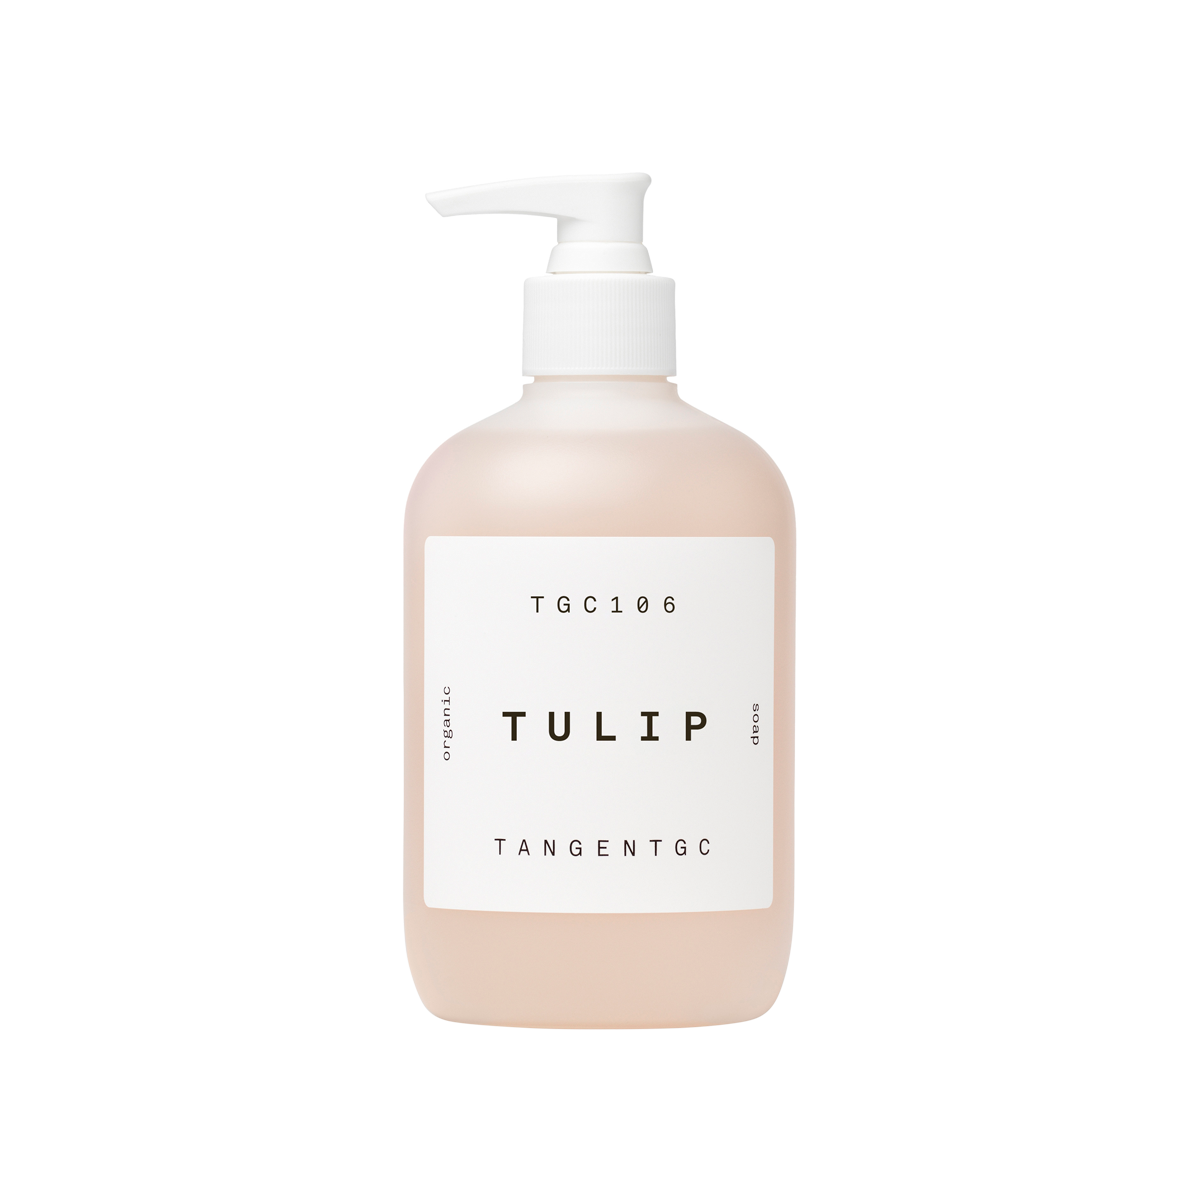 Tangent GC - Tulip Soap